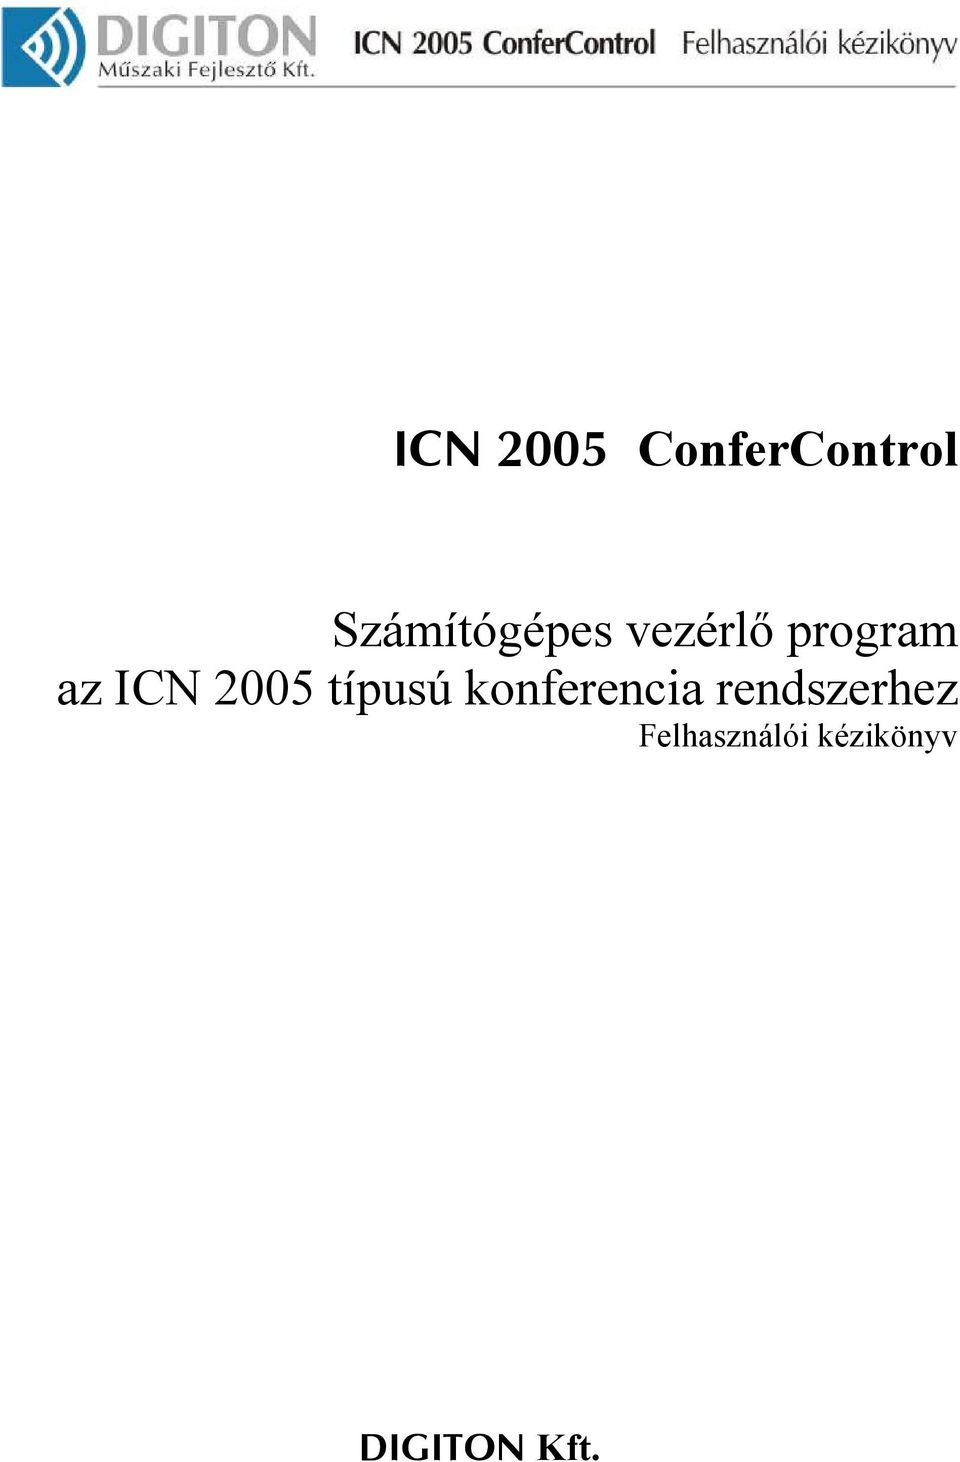 ICN 2005 típusú konferencia